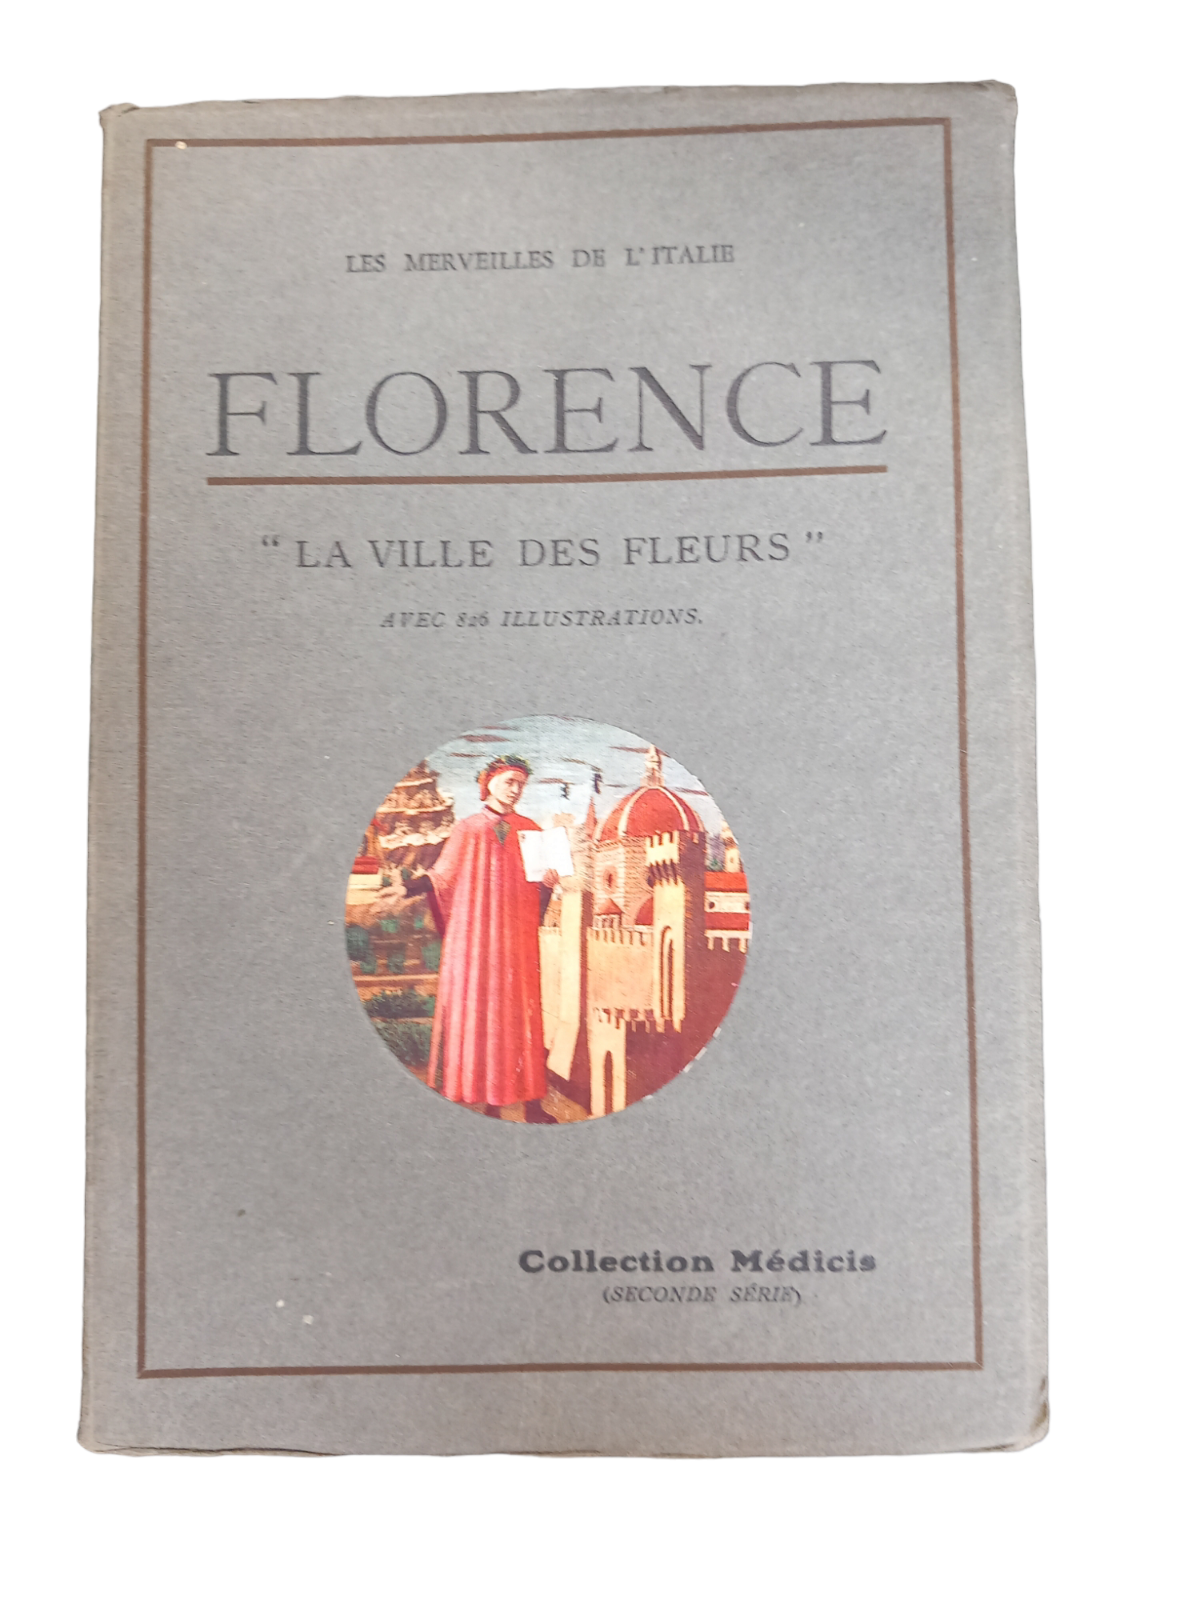 LES MERVEILLES DE L'ITALIE - FLORENCE "LA VILLE DES FLEURS" 826 illustrations.